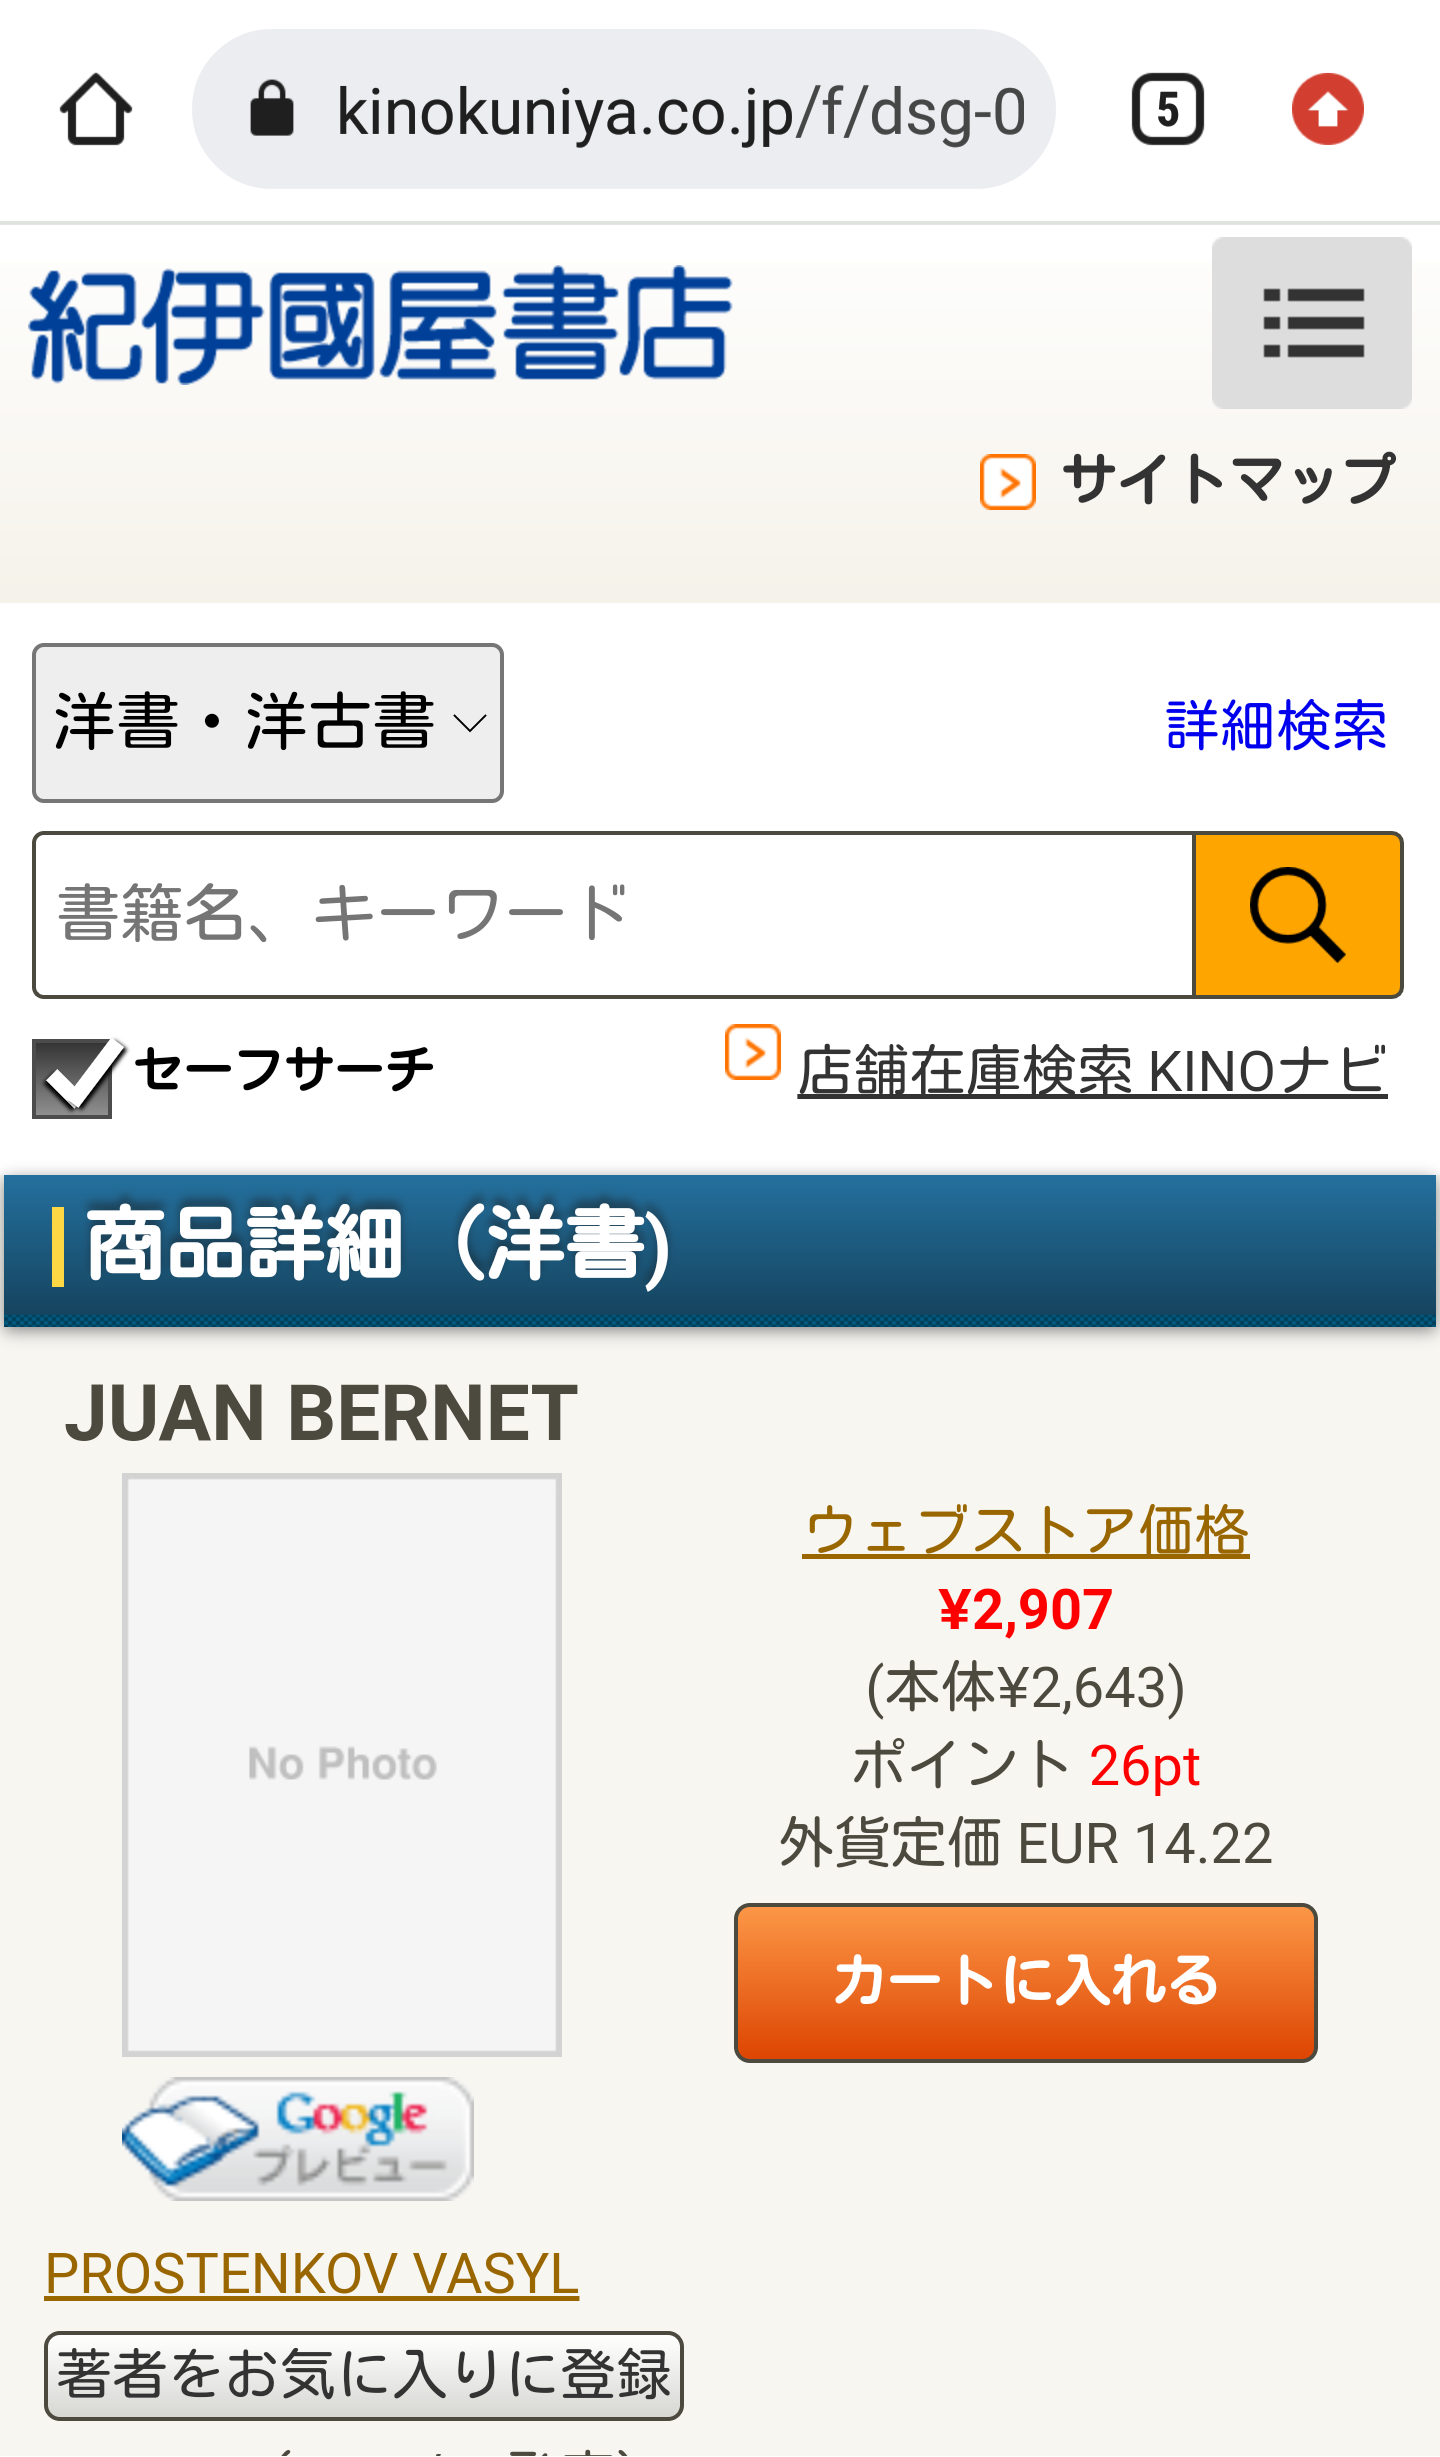 Une librairie japonaise référence le roman Juan Bernet